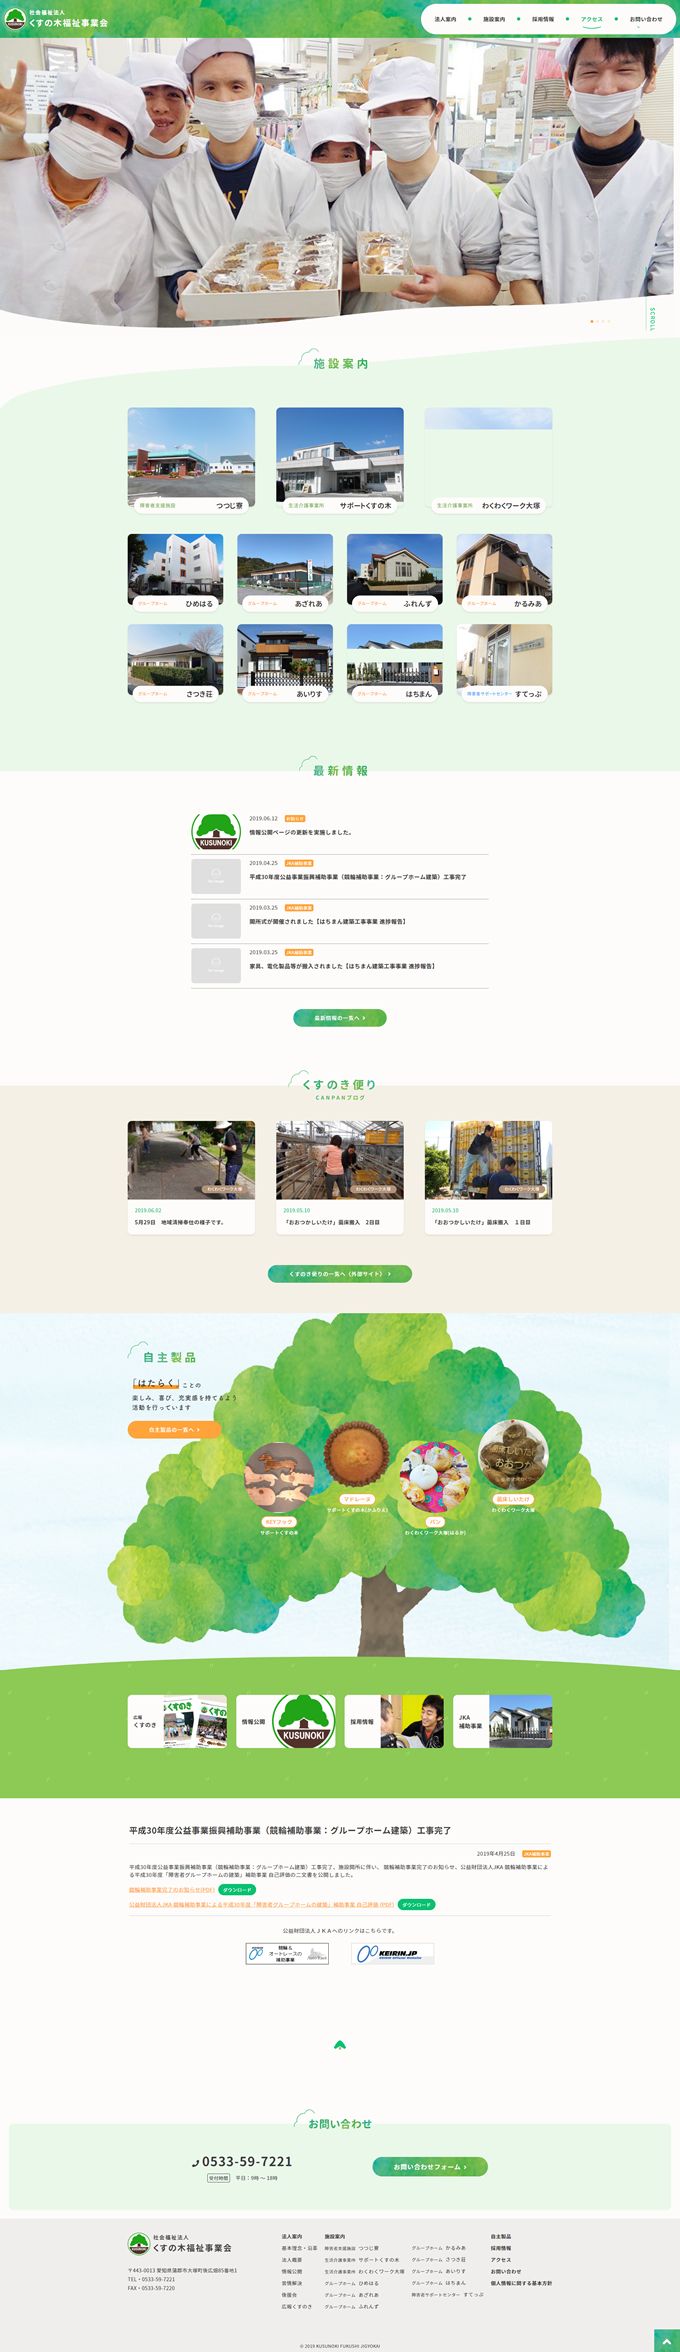 くすの木福祉事業会様サイトトップページ